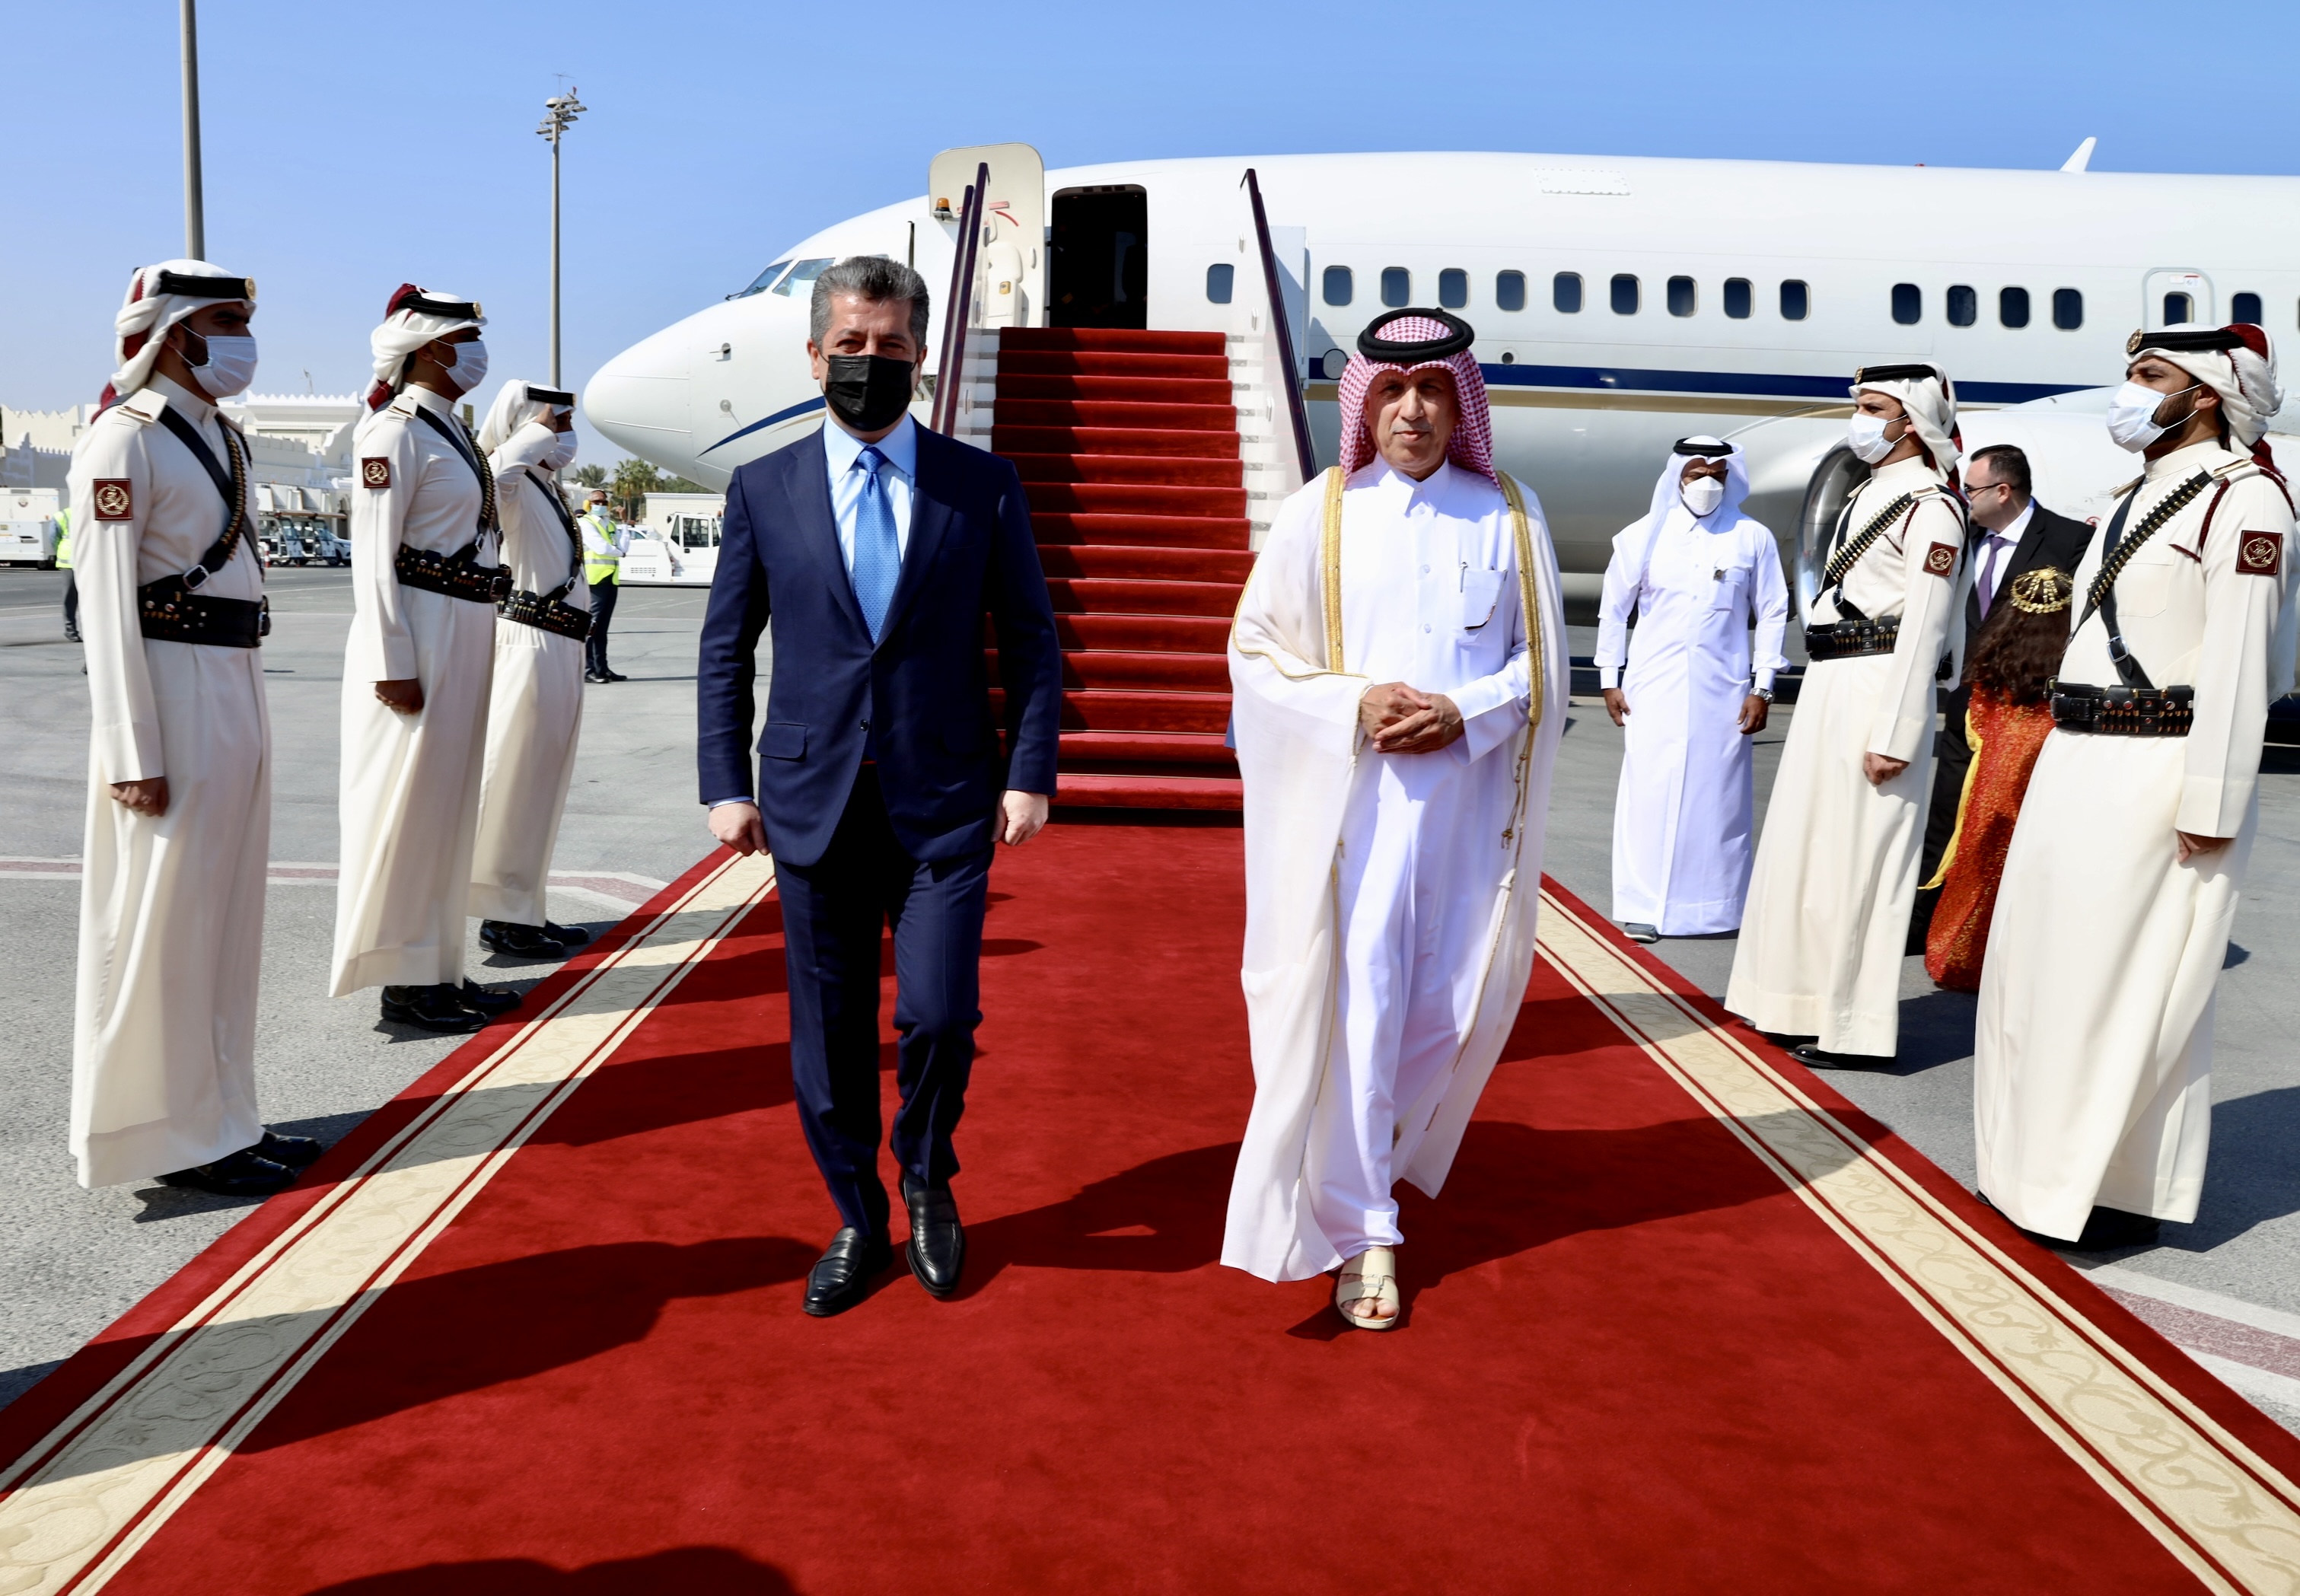  رئيس وزراء إقليم كوردستان العراق السيد مسرور بارزاني ، إلى الدوحة (قنا)